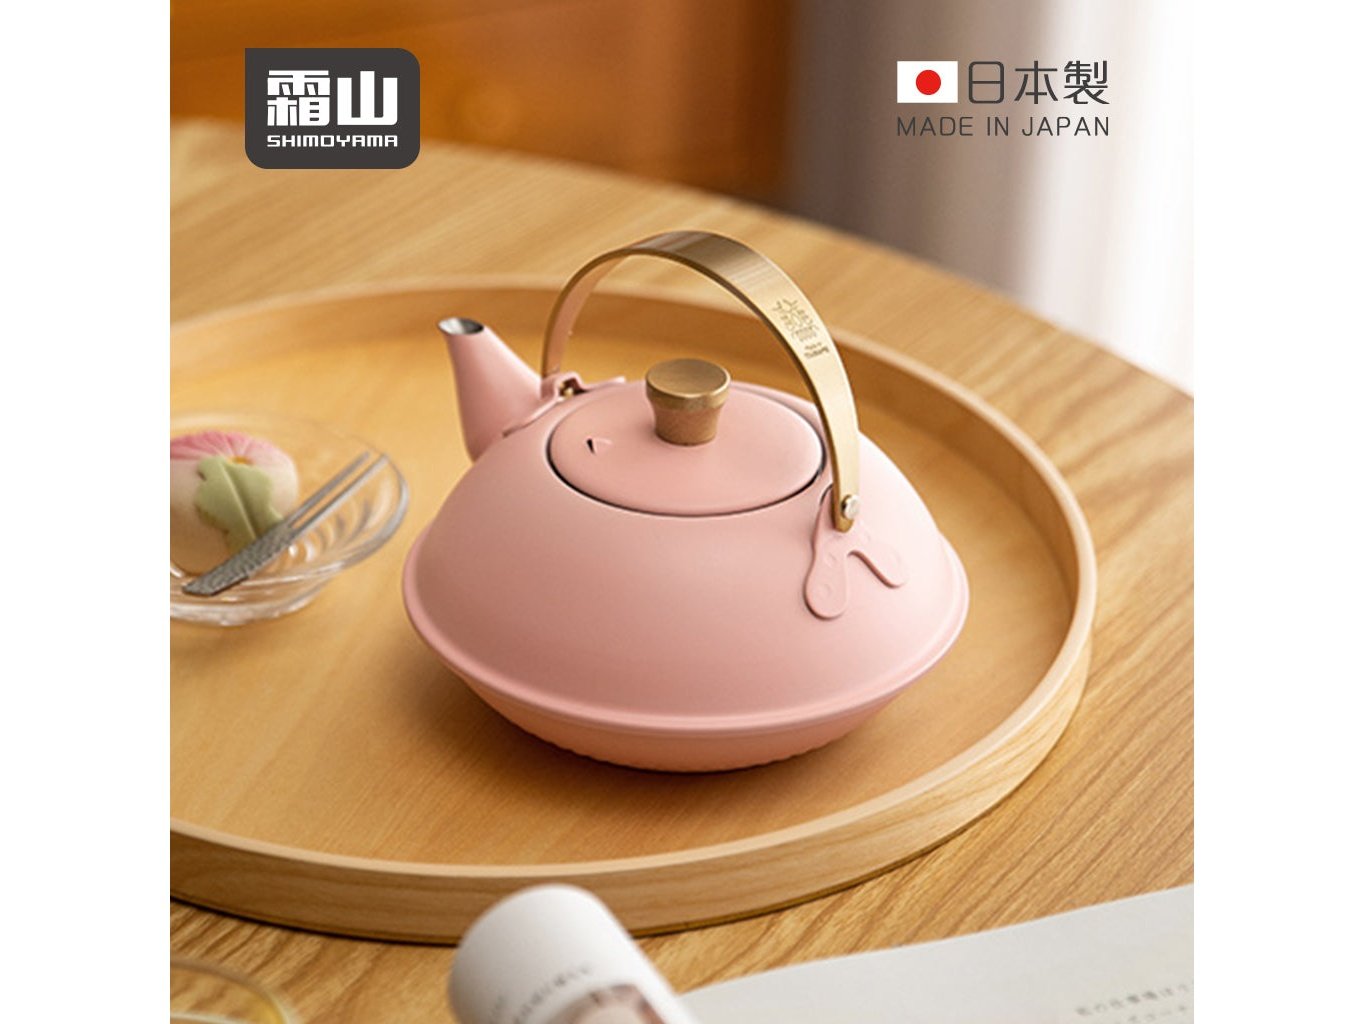 Shimoyama Stainless Kyusu Teapot 0.6L